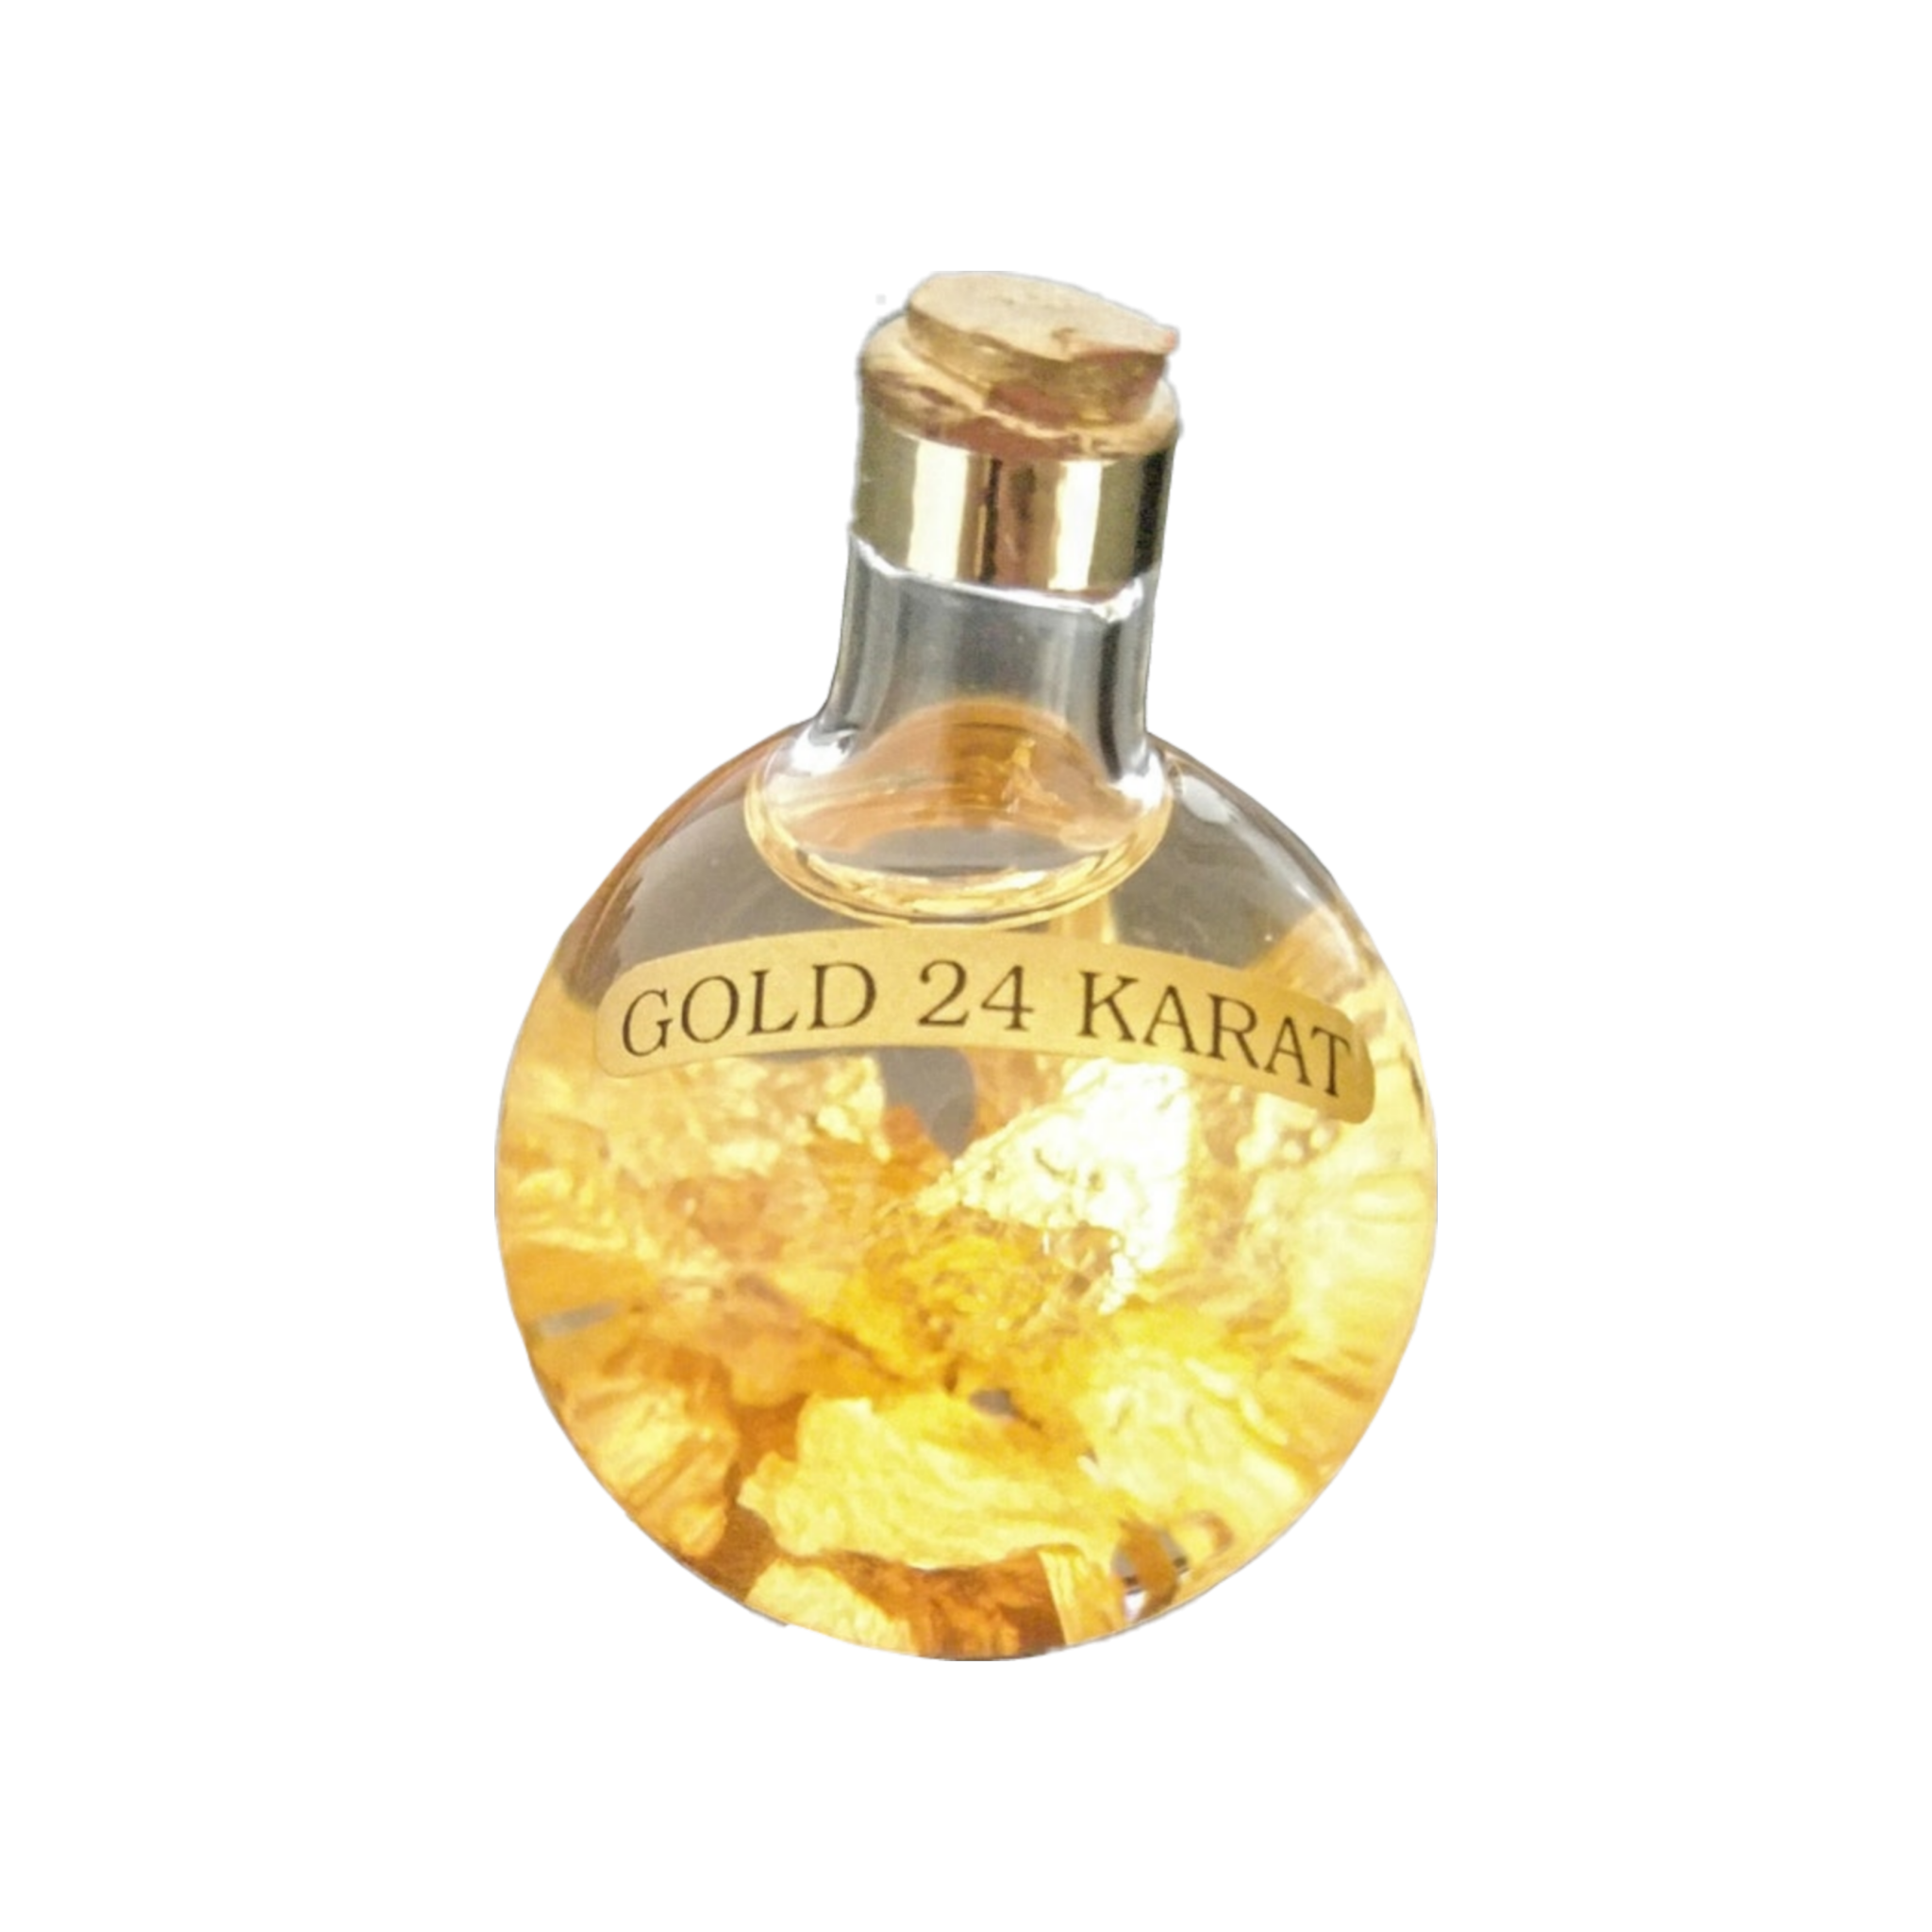 potion bottle with gold leaf labelled gold 24 karat